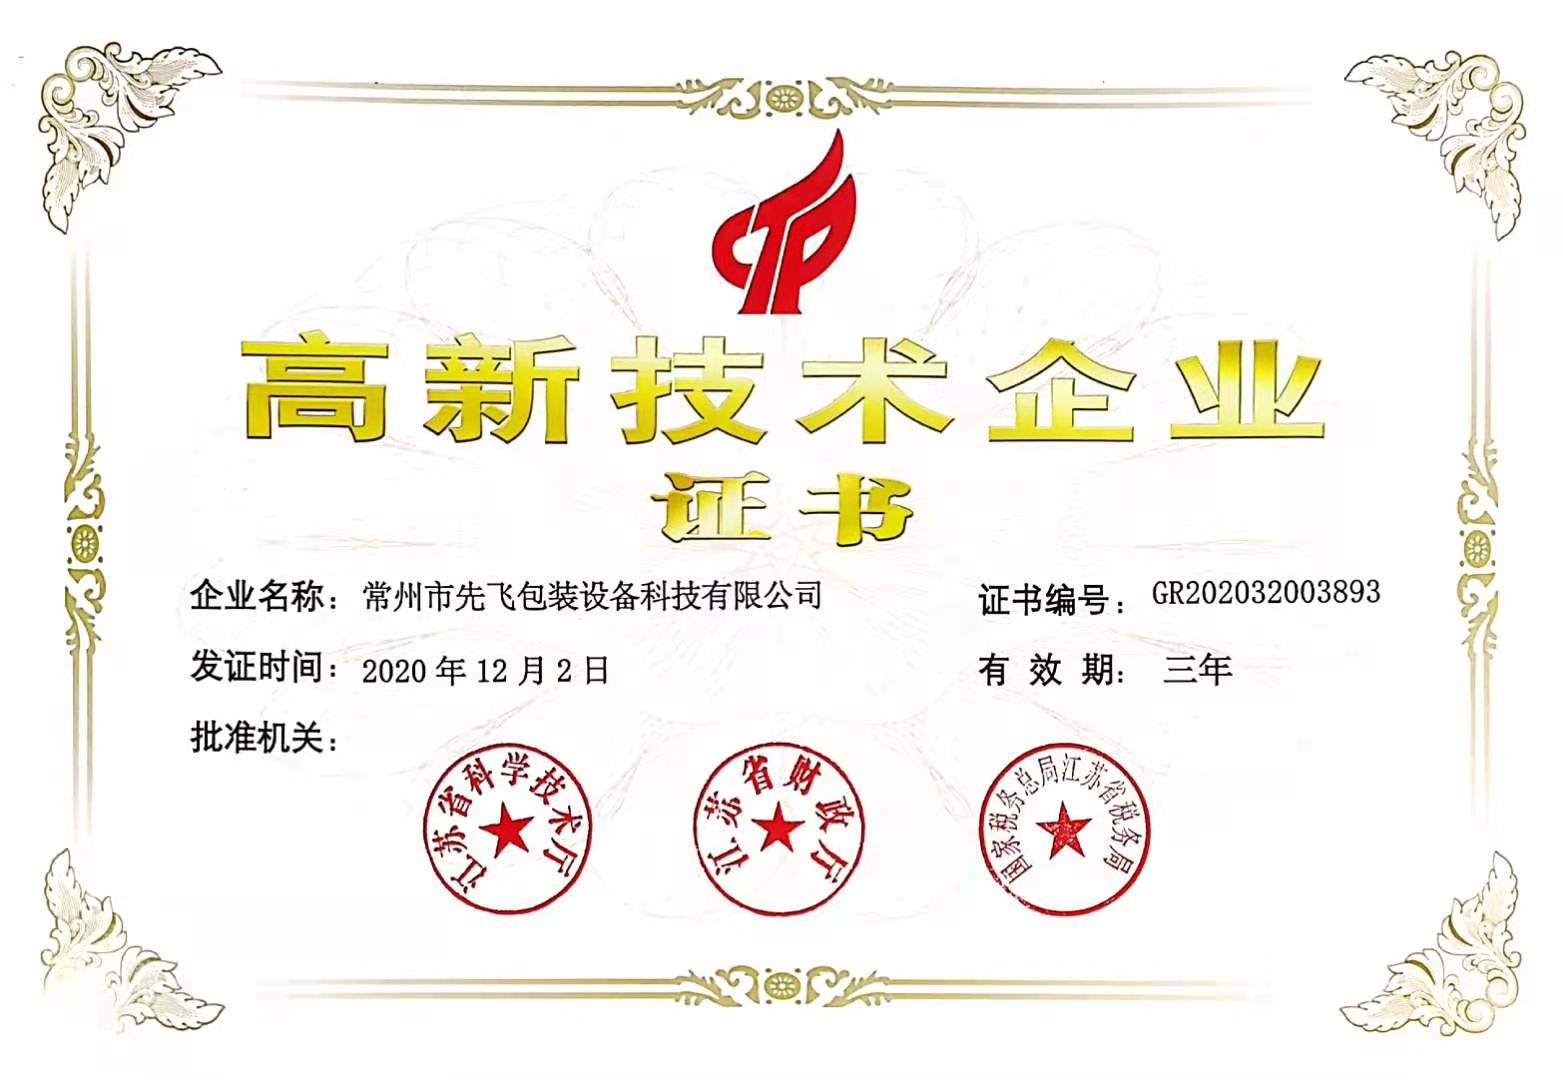 चीन Changzhou Xianfei Packing Equipment Technology Co., Ltd. प्रमाणपत्र